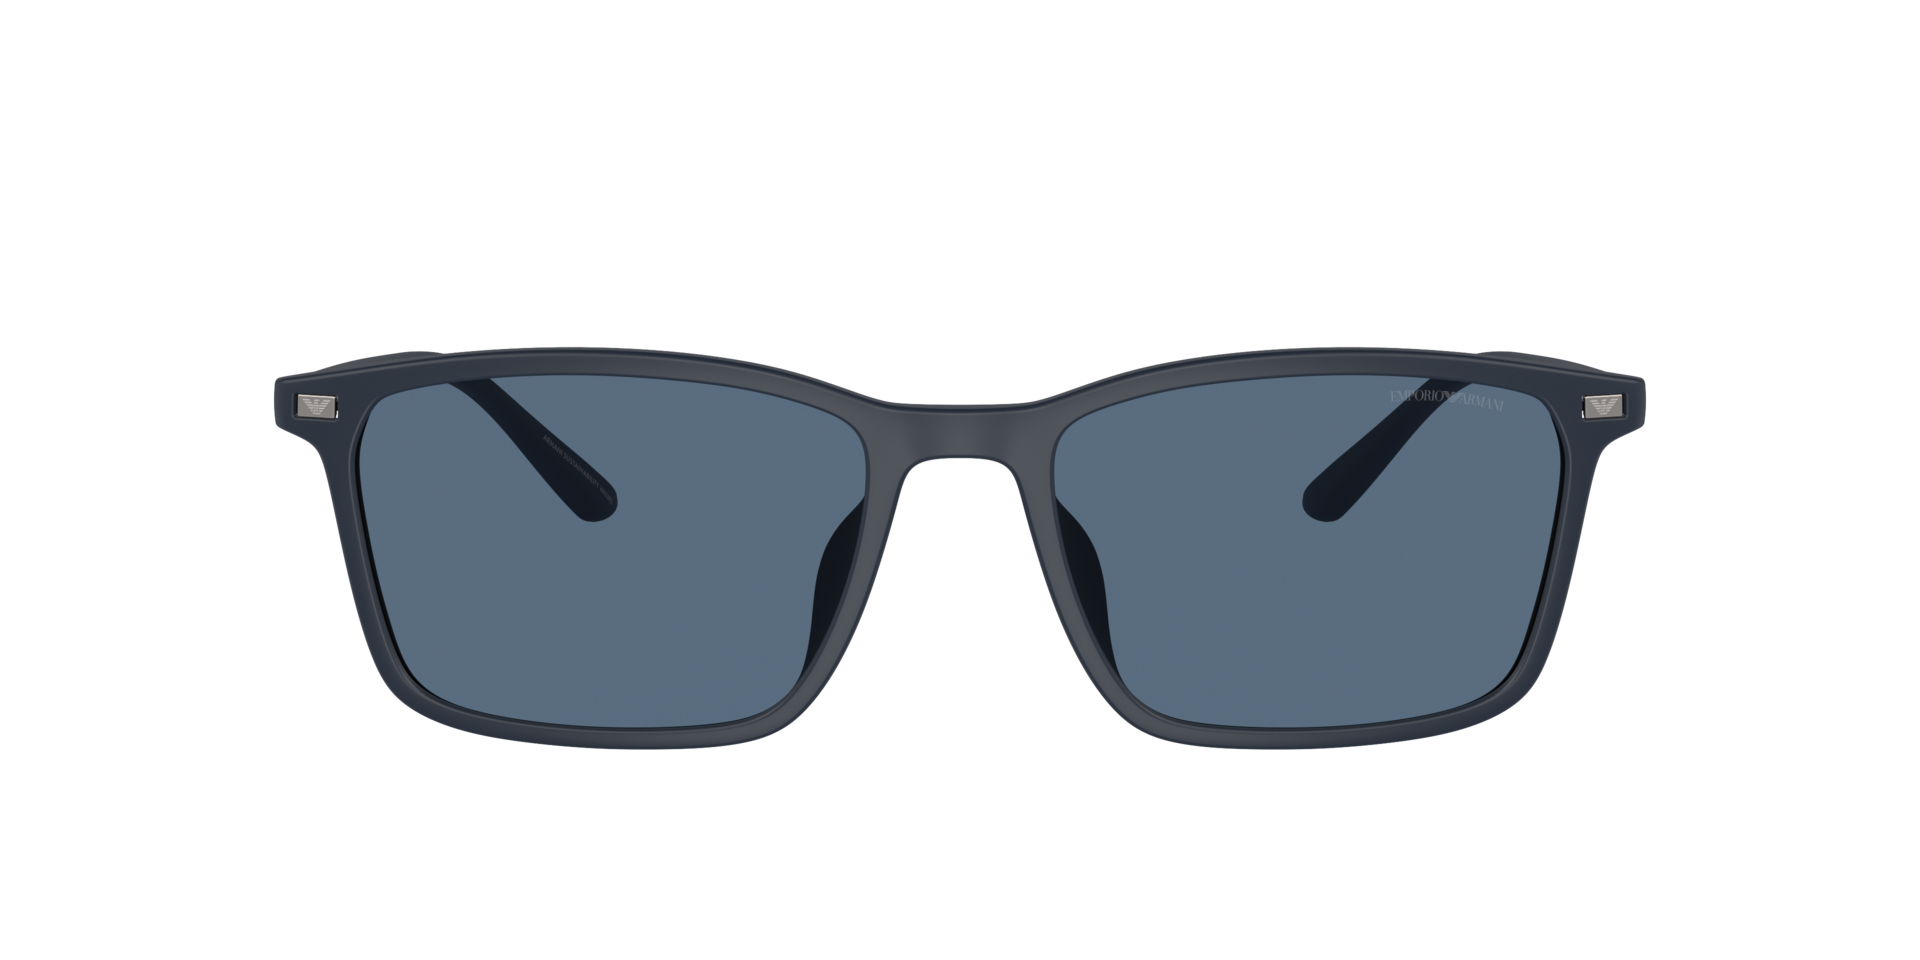 Das Bild zeigt die Sonnenbrille EA4223 508880 von der Marke Emporio Armani in blau.